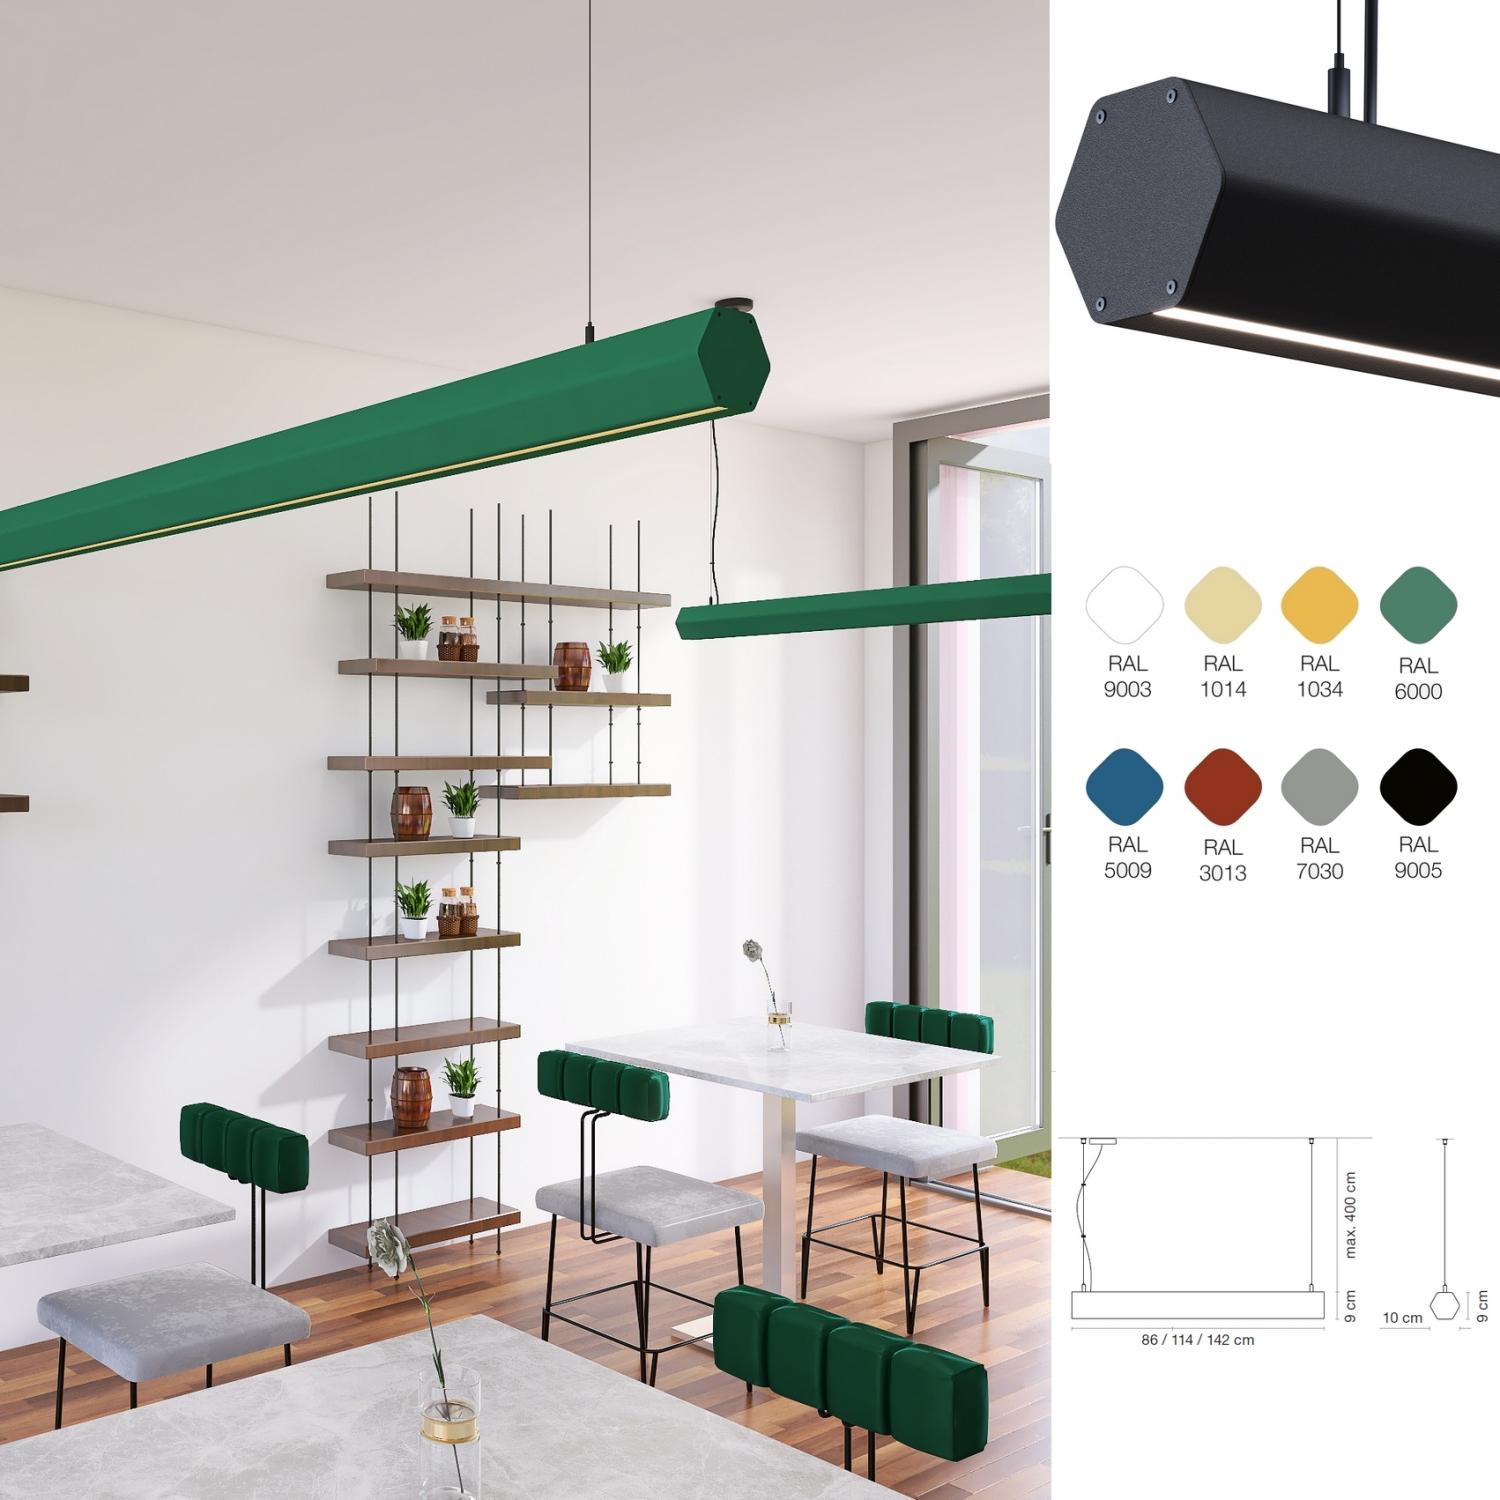 SLDPH : Suspension LED design, profile hexagonale, choix de 8 coloris, UGR<19